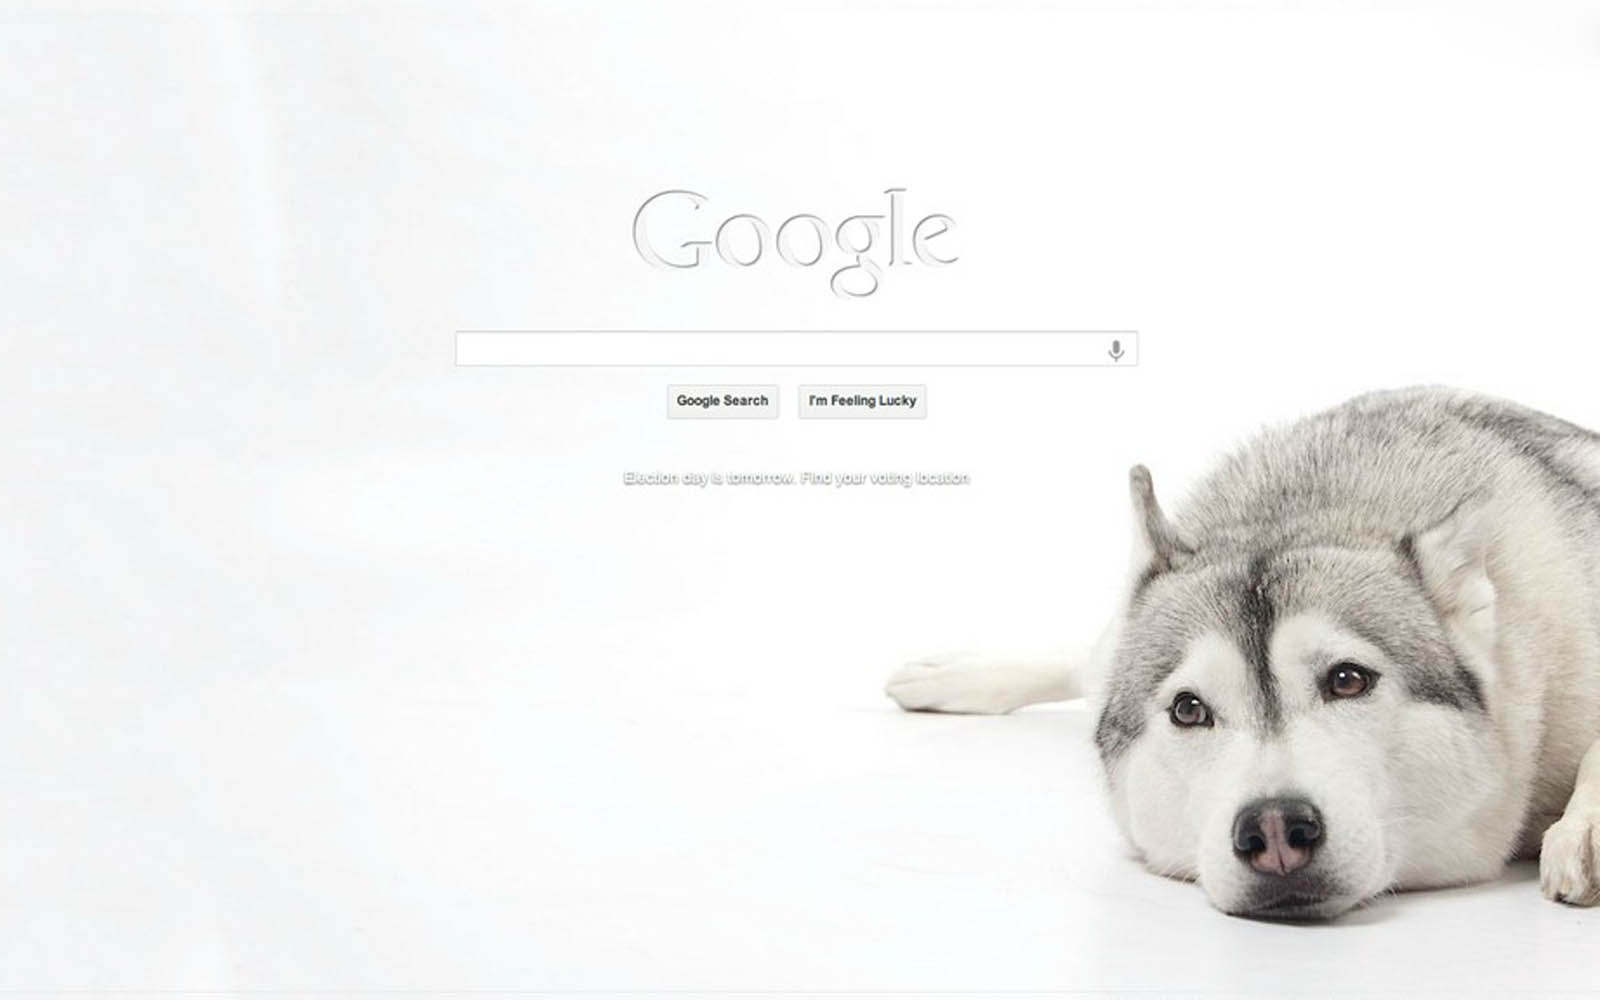 Google Desktop Wallpaper Photos Googlepictures Image